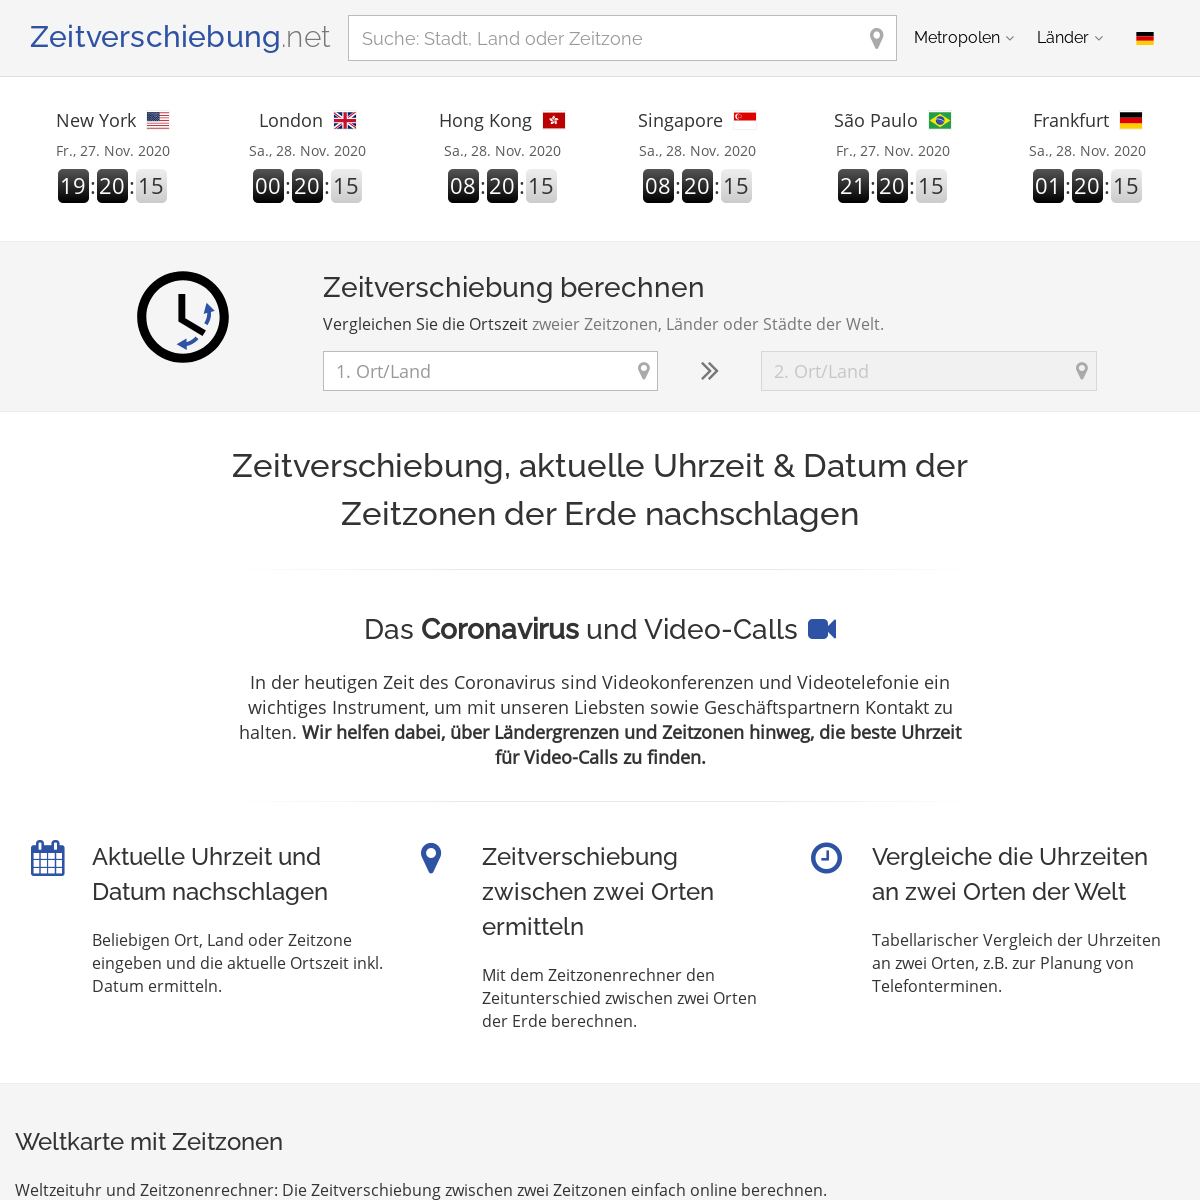 A complete backup of zeitverschiebung.net